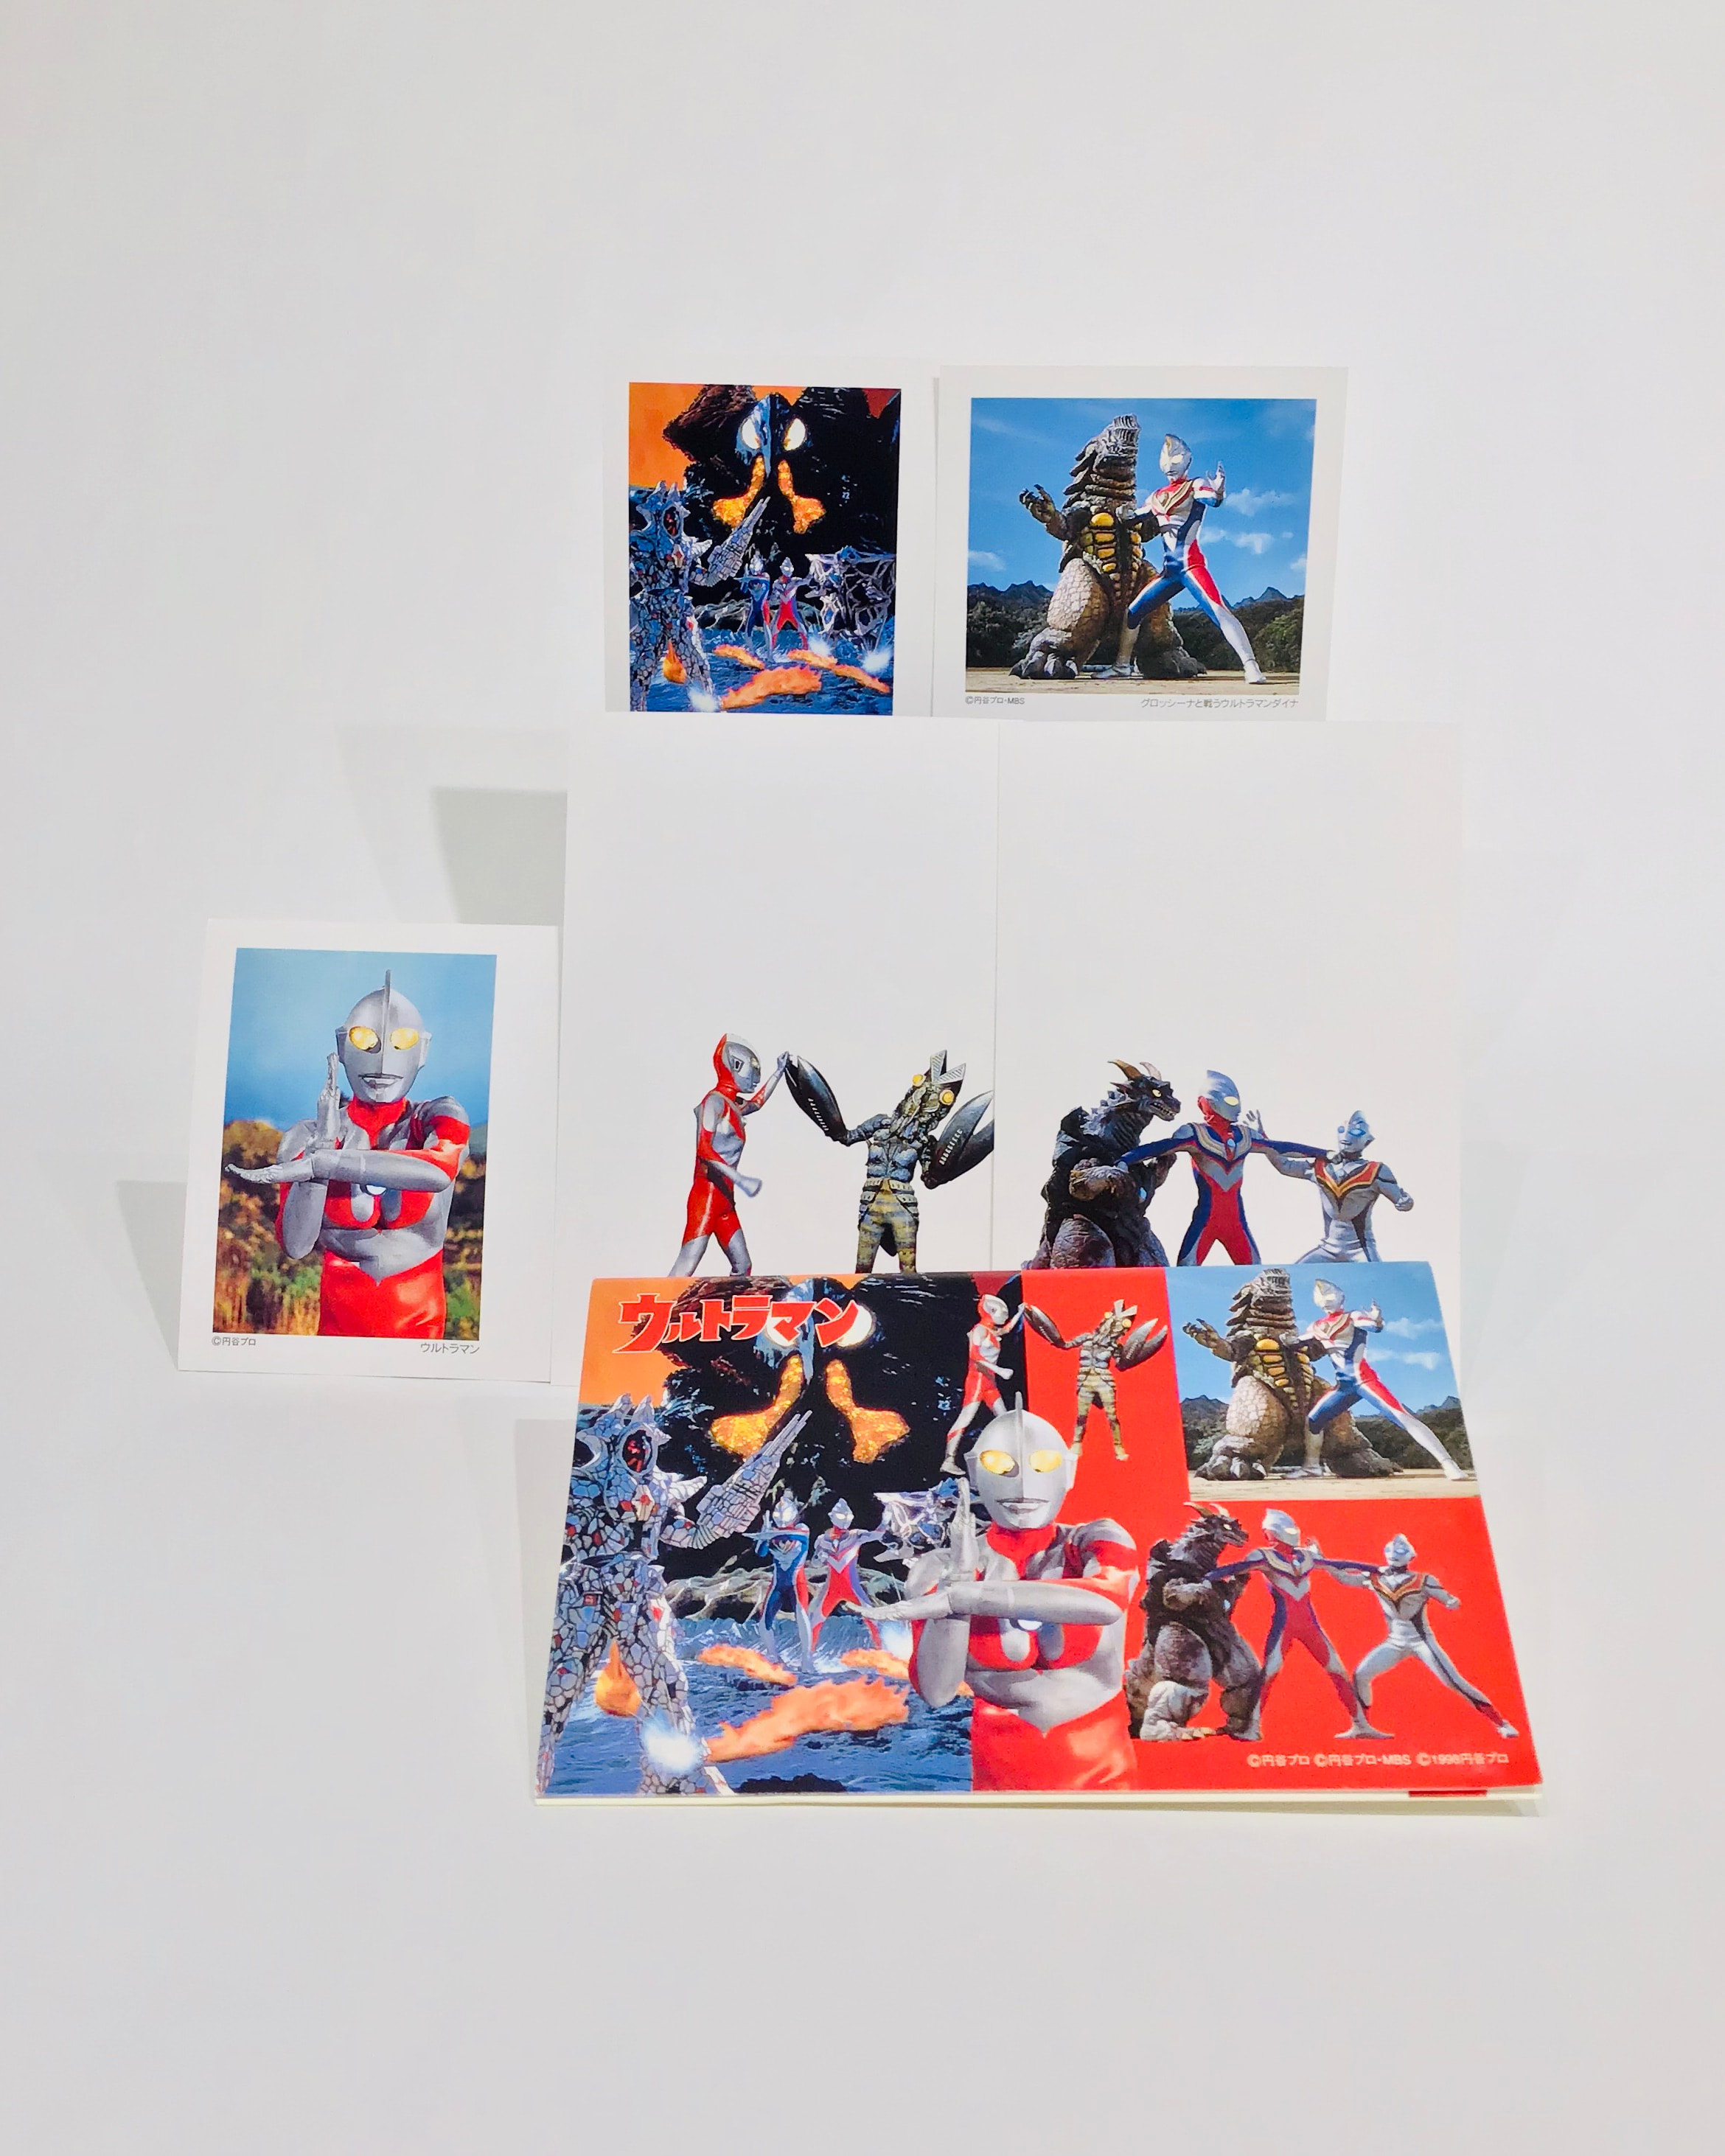 ウルトラマン 絵はがきセット/ Ultraman Postcard Set